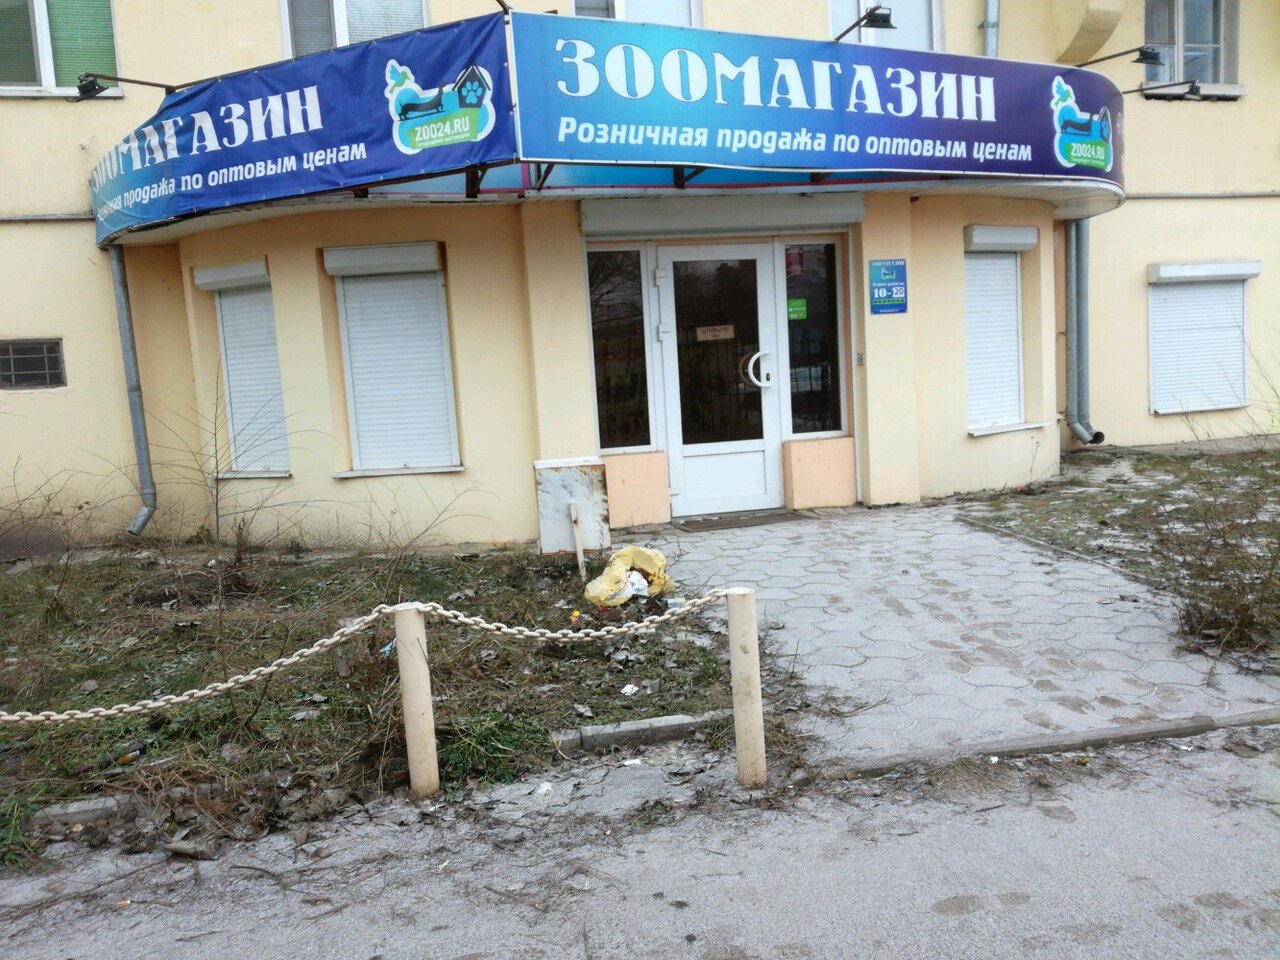 Зоо24 Интернет Магазин В Воронеже